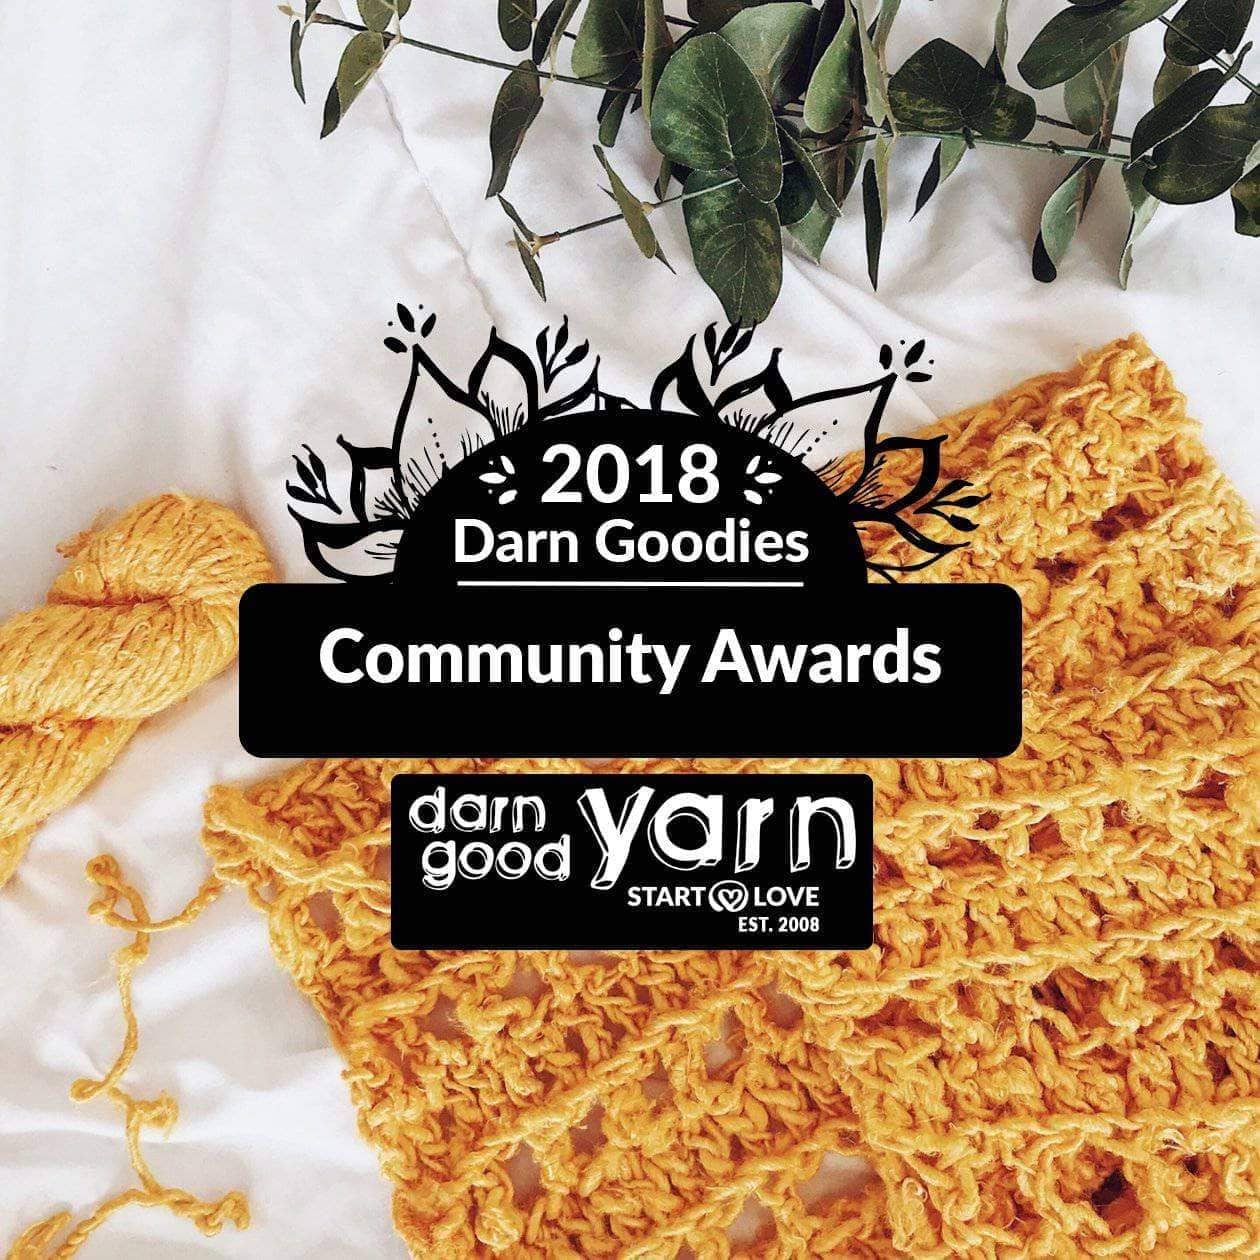 2019 Darn Goodies Community Awards - Darn Good Yarn